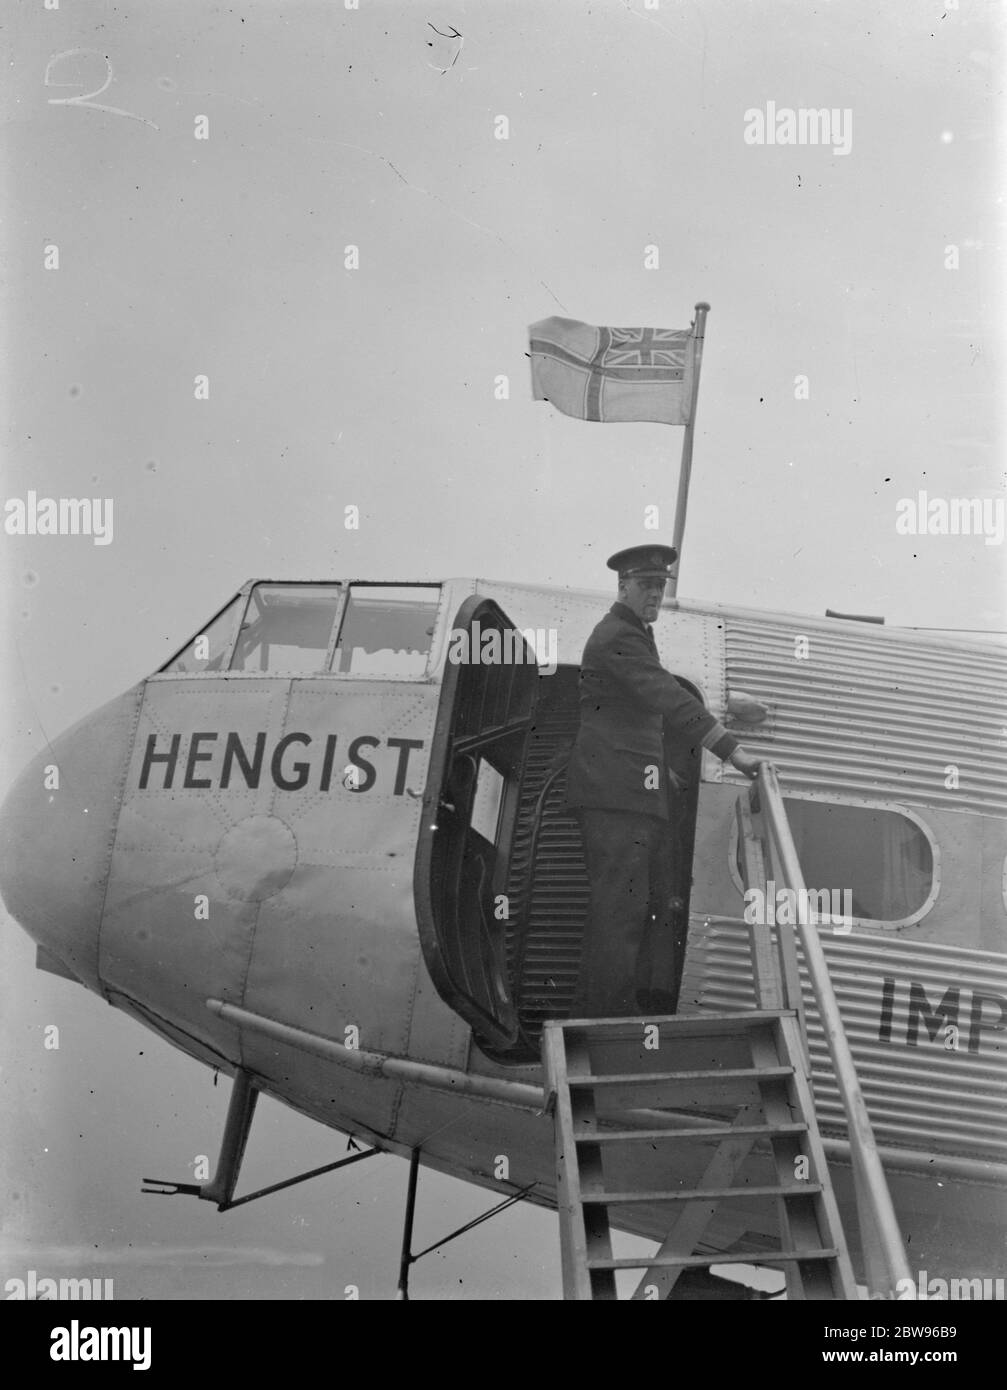 Le nouveau drapeau de l'aviation civile britannique a hissé à Croydon . Le nouveau drapeau de l'aviation civile britannique , composé de la croix de St George , avec l'Union Jack dans la cornr hissé sur un avion de ligne impérial , à Croydon aérodrome , Londres , avant de partir pour Aintree , Liverpool transportant des passagers pour voir le Grand National . 18 mars 1932 Banque D'Images